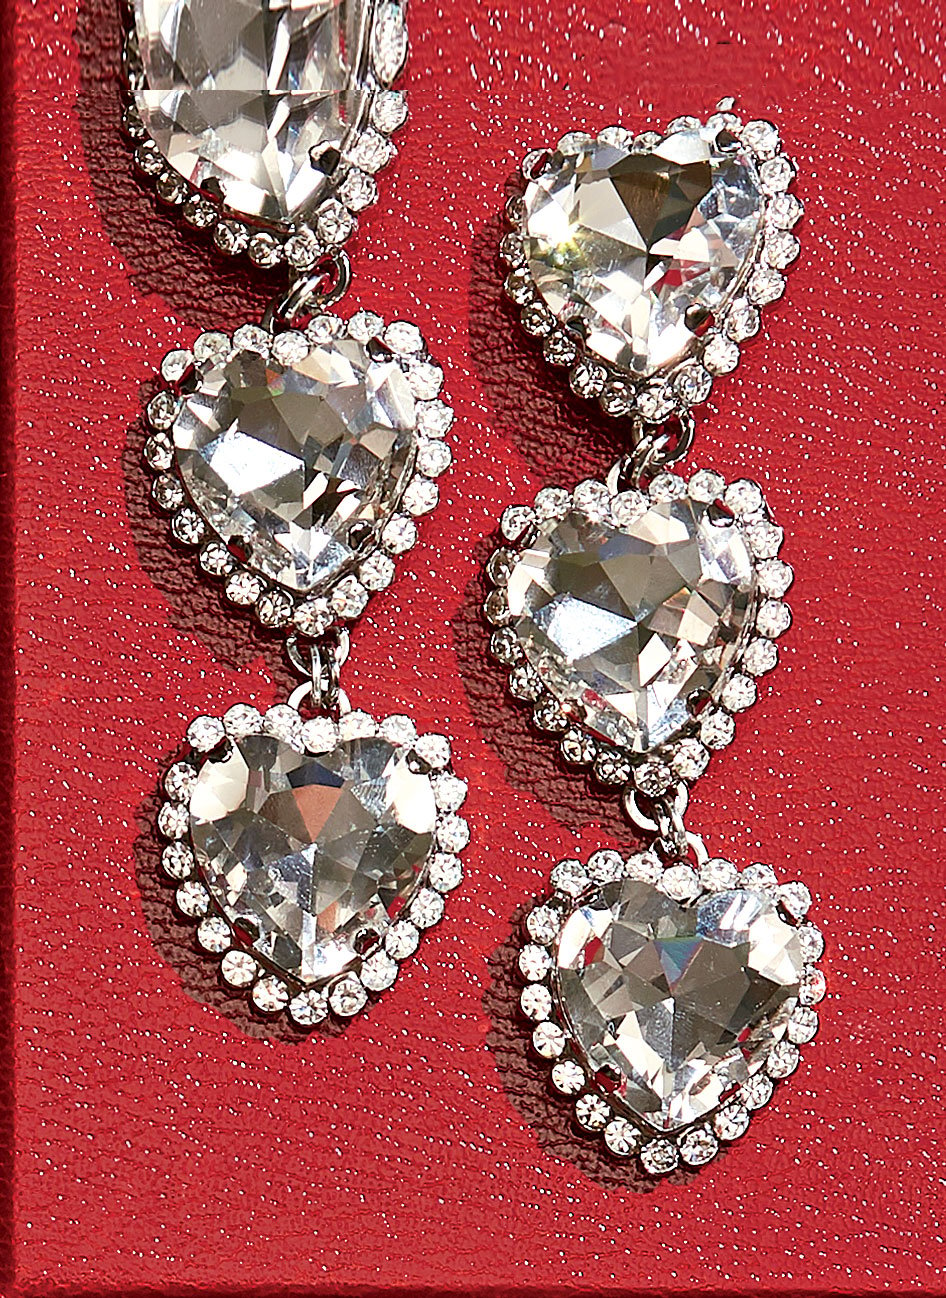 gold plated silver earrings crystal earrings heart earrings valentine's earrings pearl earrings heart earrings